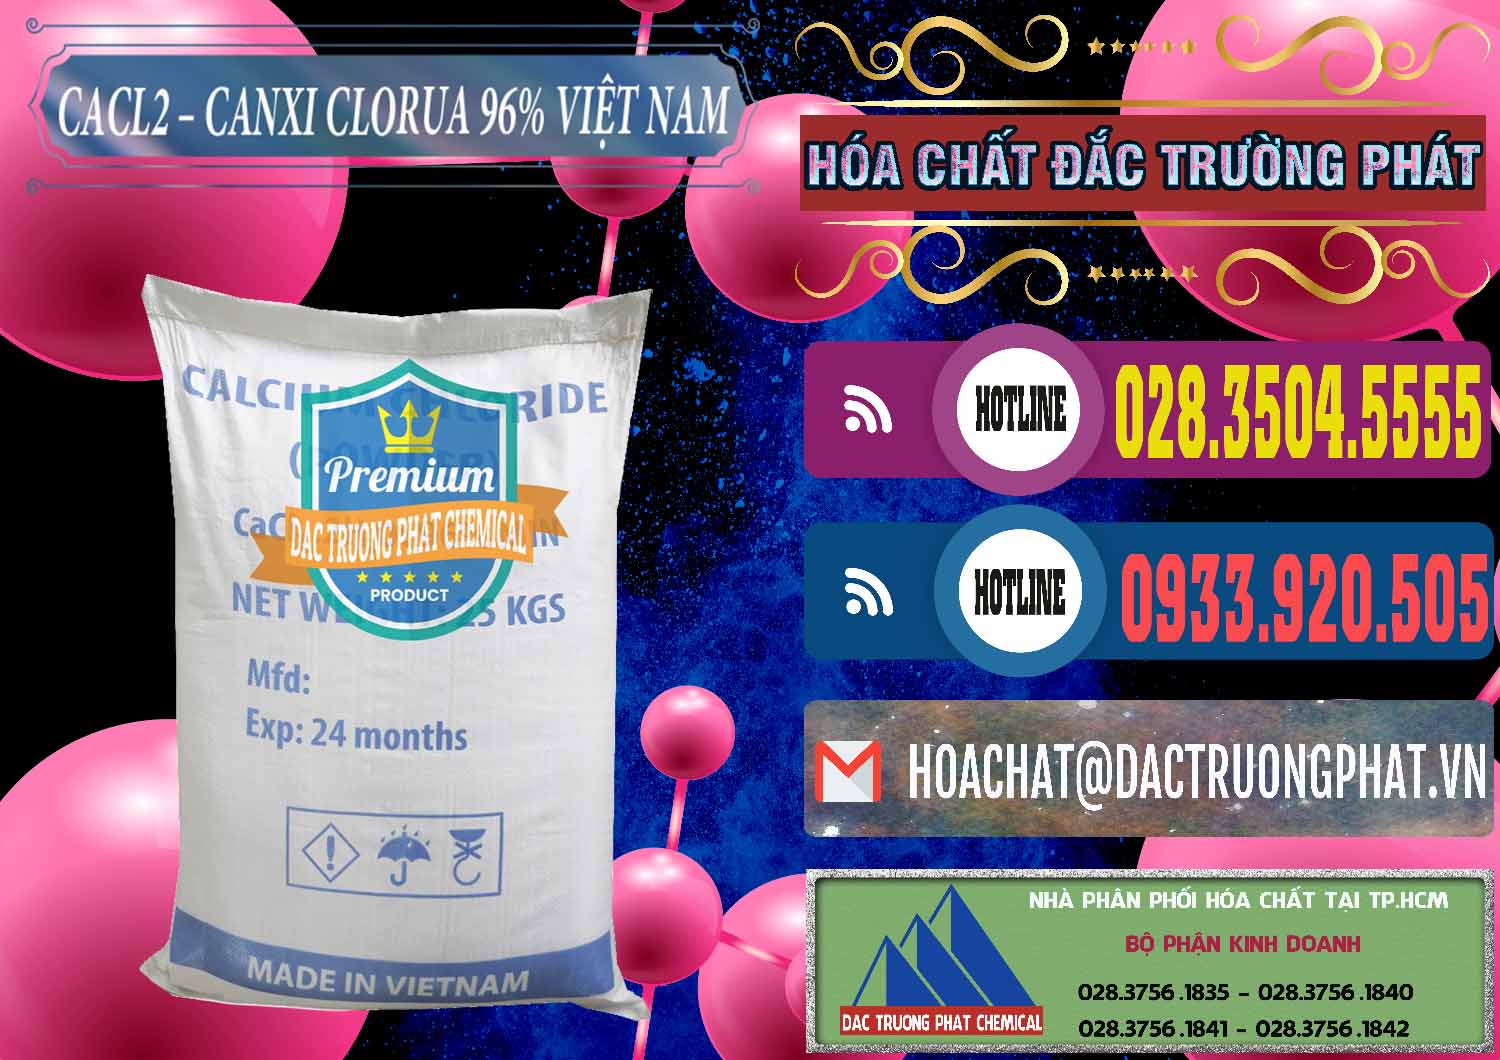 Đơn vị bán và phân phối CaCl2 – Canxi Clorua 96% Việt Nam - 0236 - Chuyên cung cấp _ kinh doanh hóa chất tại TP.HCM - muabanhoachat.com.vn